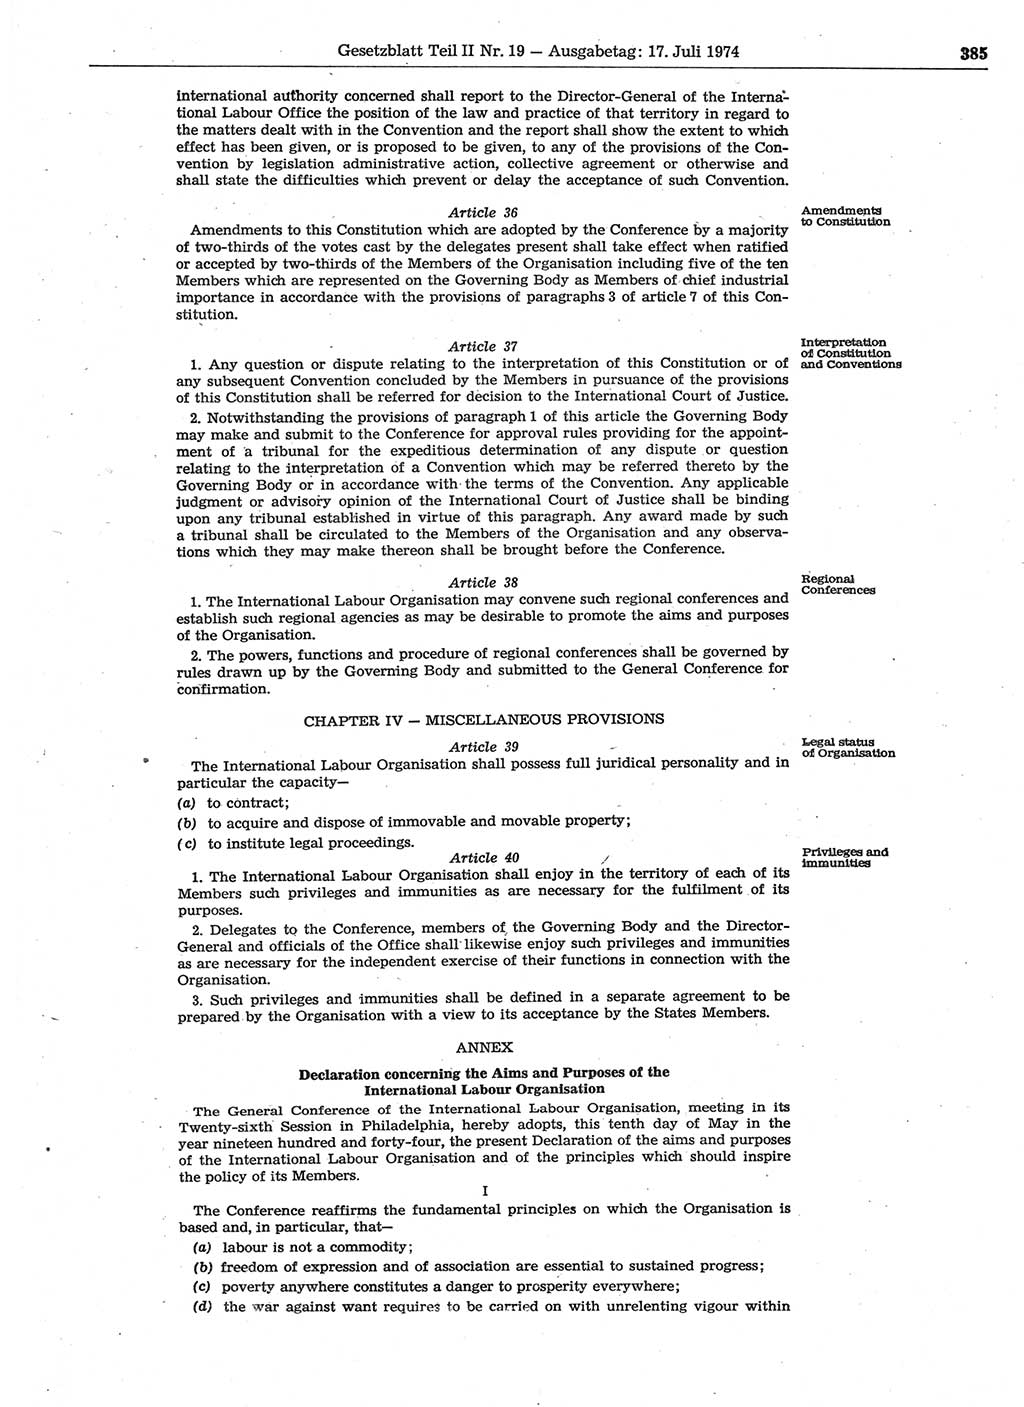 Gesetzblatt (GBl.) der Deutschen Demokratischen Republik (DDR) Teil ⅠⅠ 1974, Seite 385 (GBl. DDR ⅠⅠ 1974, S. 385)